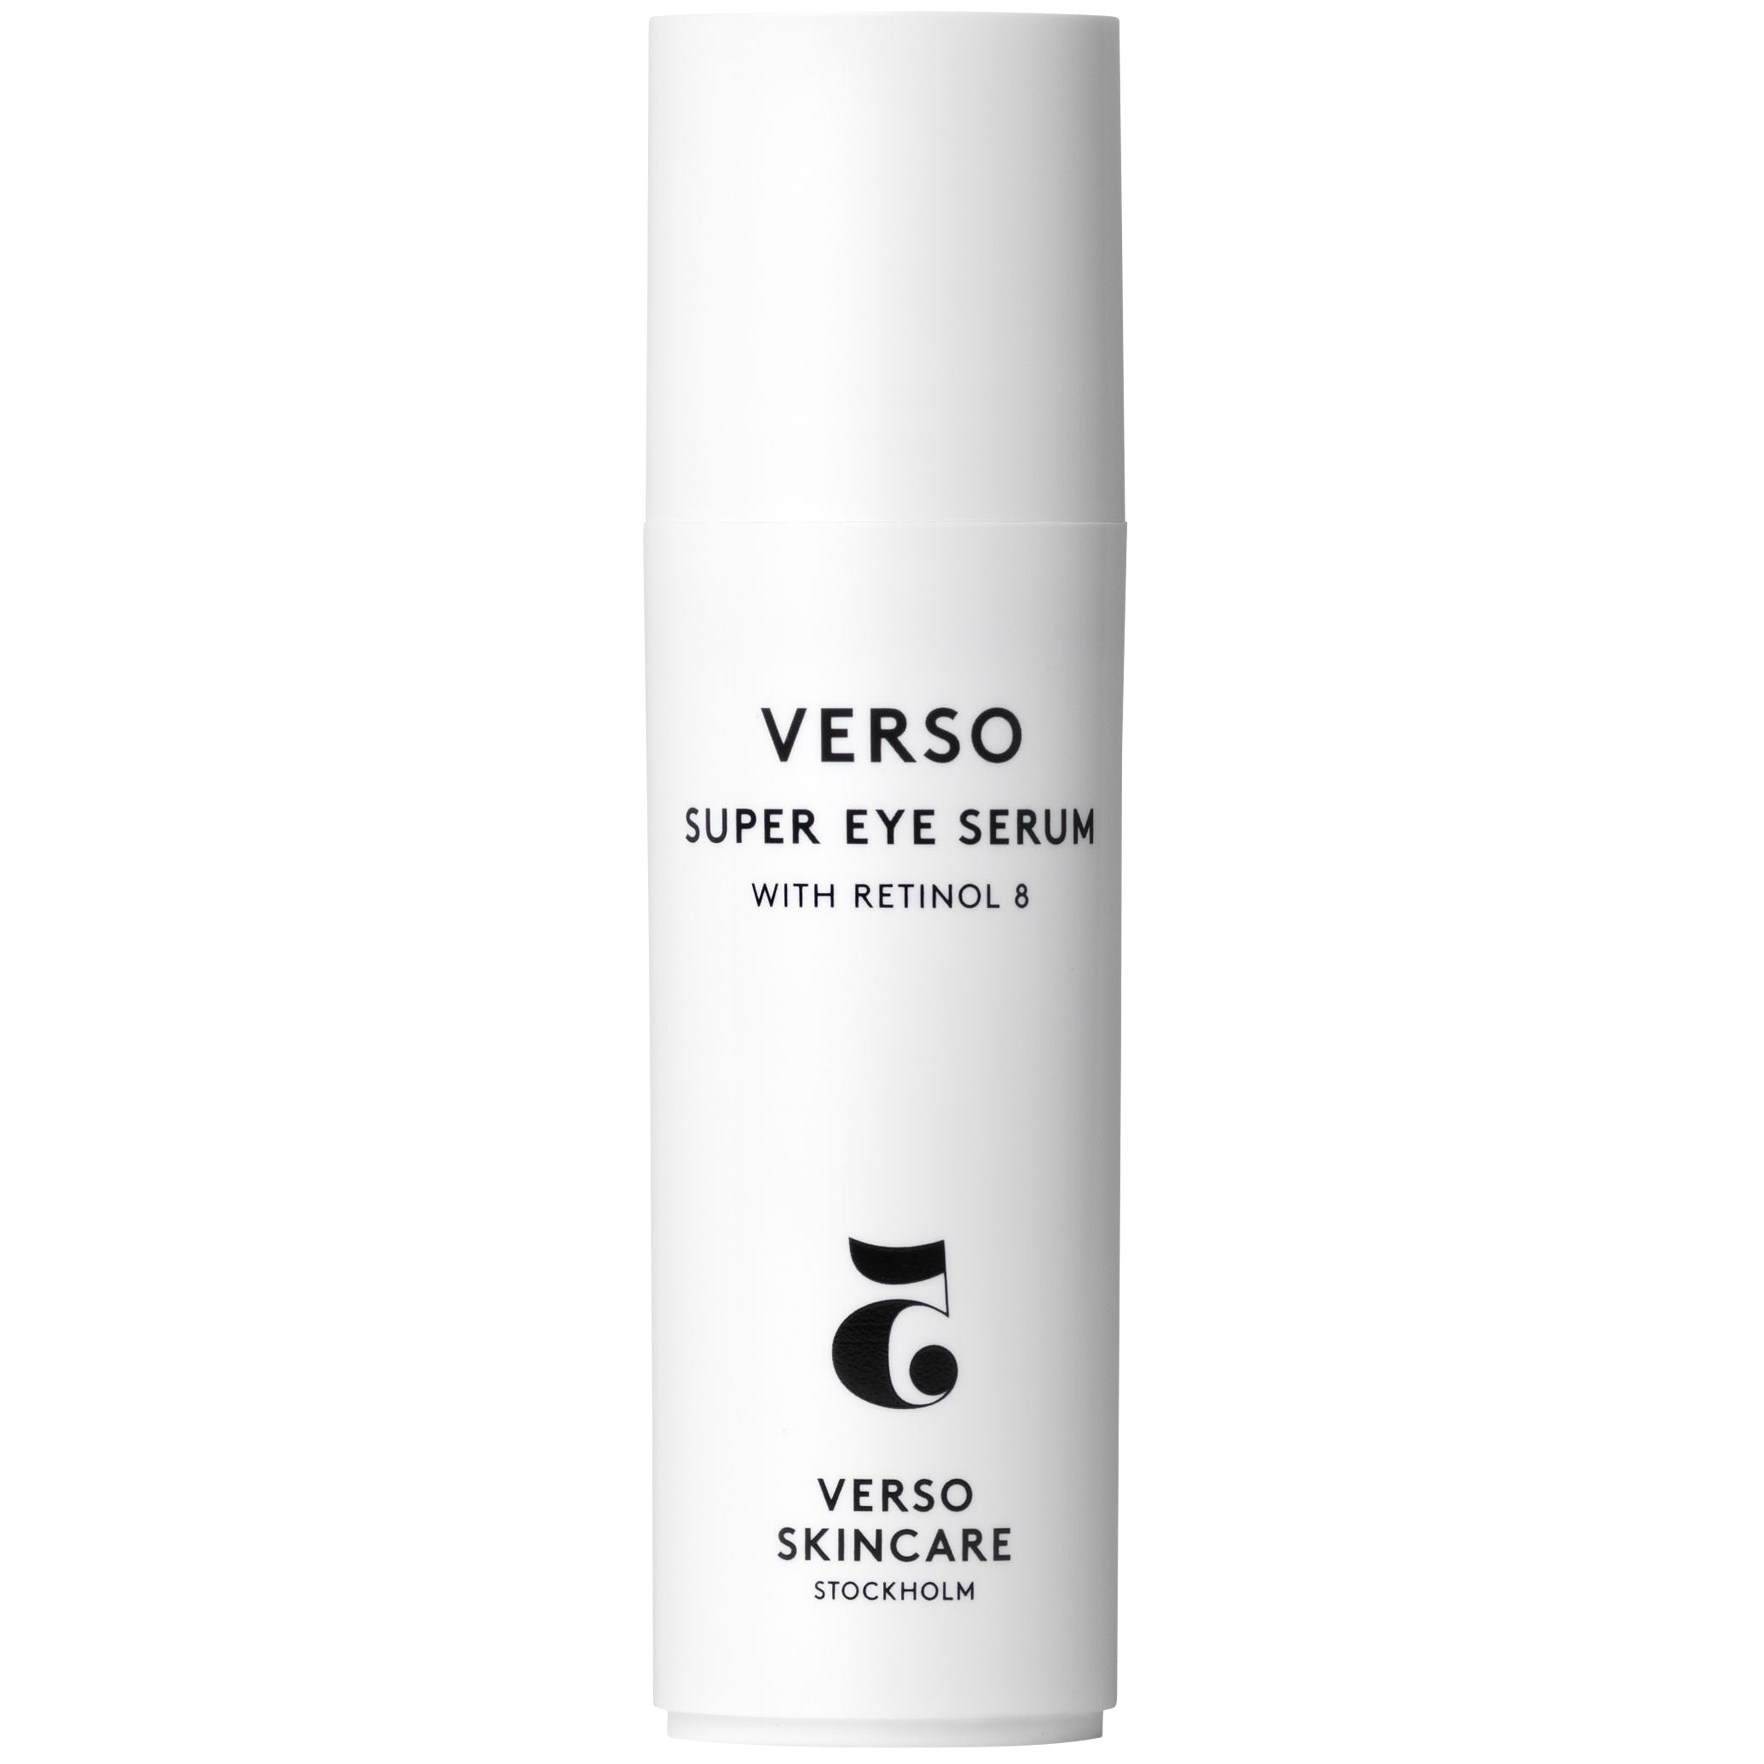 Bilde av Verso Skincare N°5 Super Eye Serum With Retinol 8 15 Ml